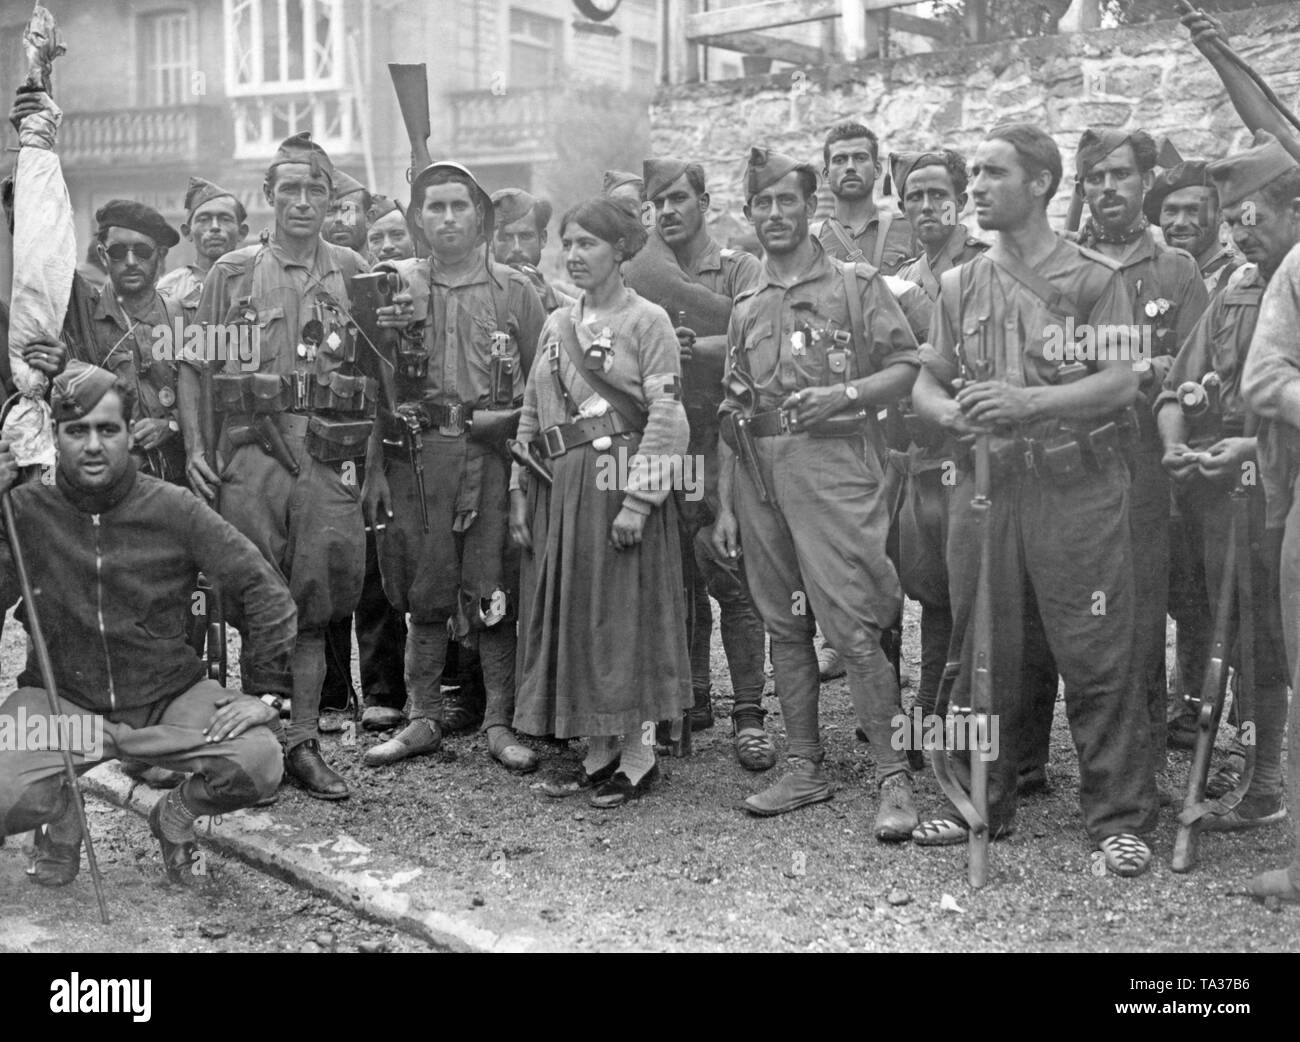 Foto von einer Gruppe von Kämpfern auf der Seite der Regierungstruppen in der Baskischen Grenzstadt Irun (Frankreich), vermutlich im Sommer 1936. Die Kämpfer tragen verschiedene einheitliche Stücke (Latzhosen und Feld tuniken) bzw. sind teilweise in Zivilkleidung. Sie sind mit leichten Waffen, insbesondere Karabiner und Revolver bewaffnet. Auf der linken Seite, ein Teniente (Leutnant), wahrscheinlich der Kommandeur der Einheit, ruht auf einem Stock. In der Mitte stellt ein Medic mit einem roten Kreuz Armband. Sie ist mit einem Revolver bewaffnet. Einige Soldaten tragen alpargatas, einfache Baumwolle Schuhe mit geflochtenem Hanf Sohlen. Stockfoto